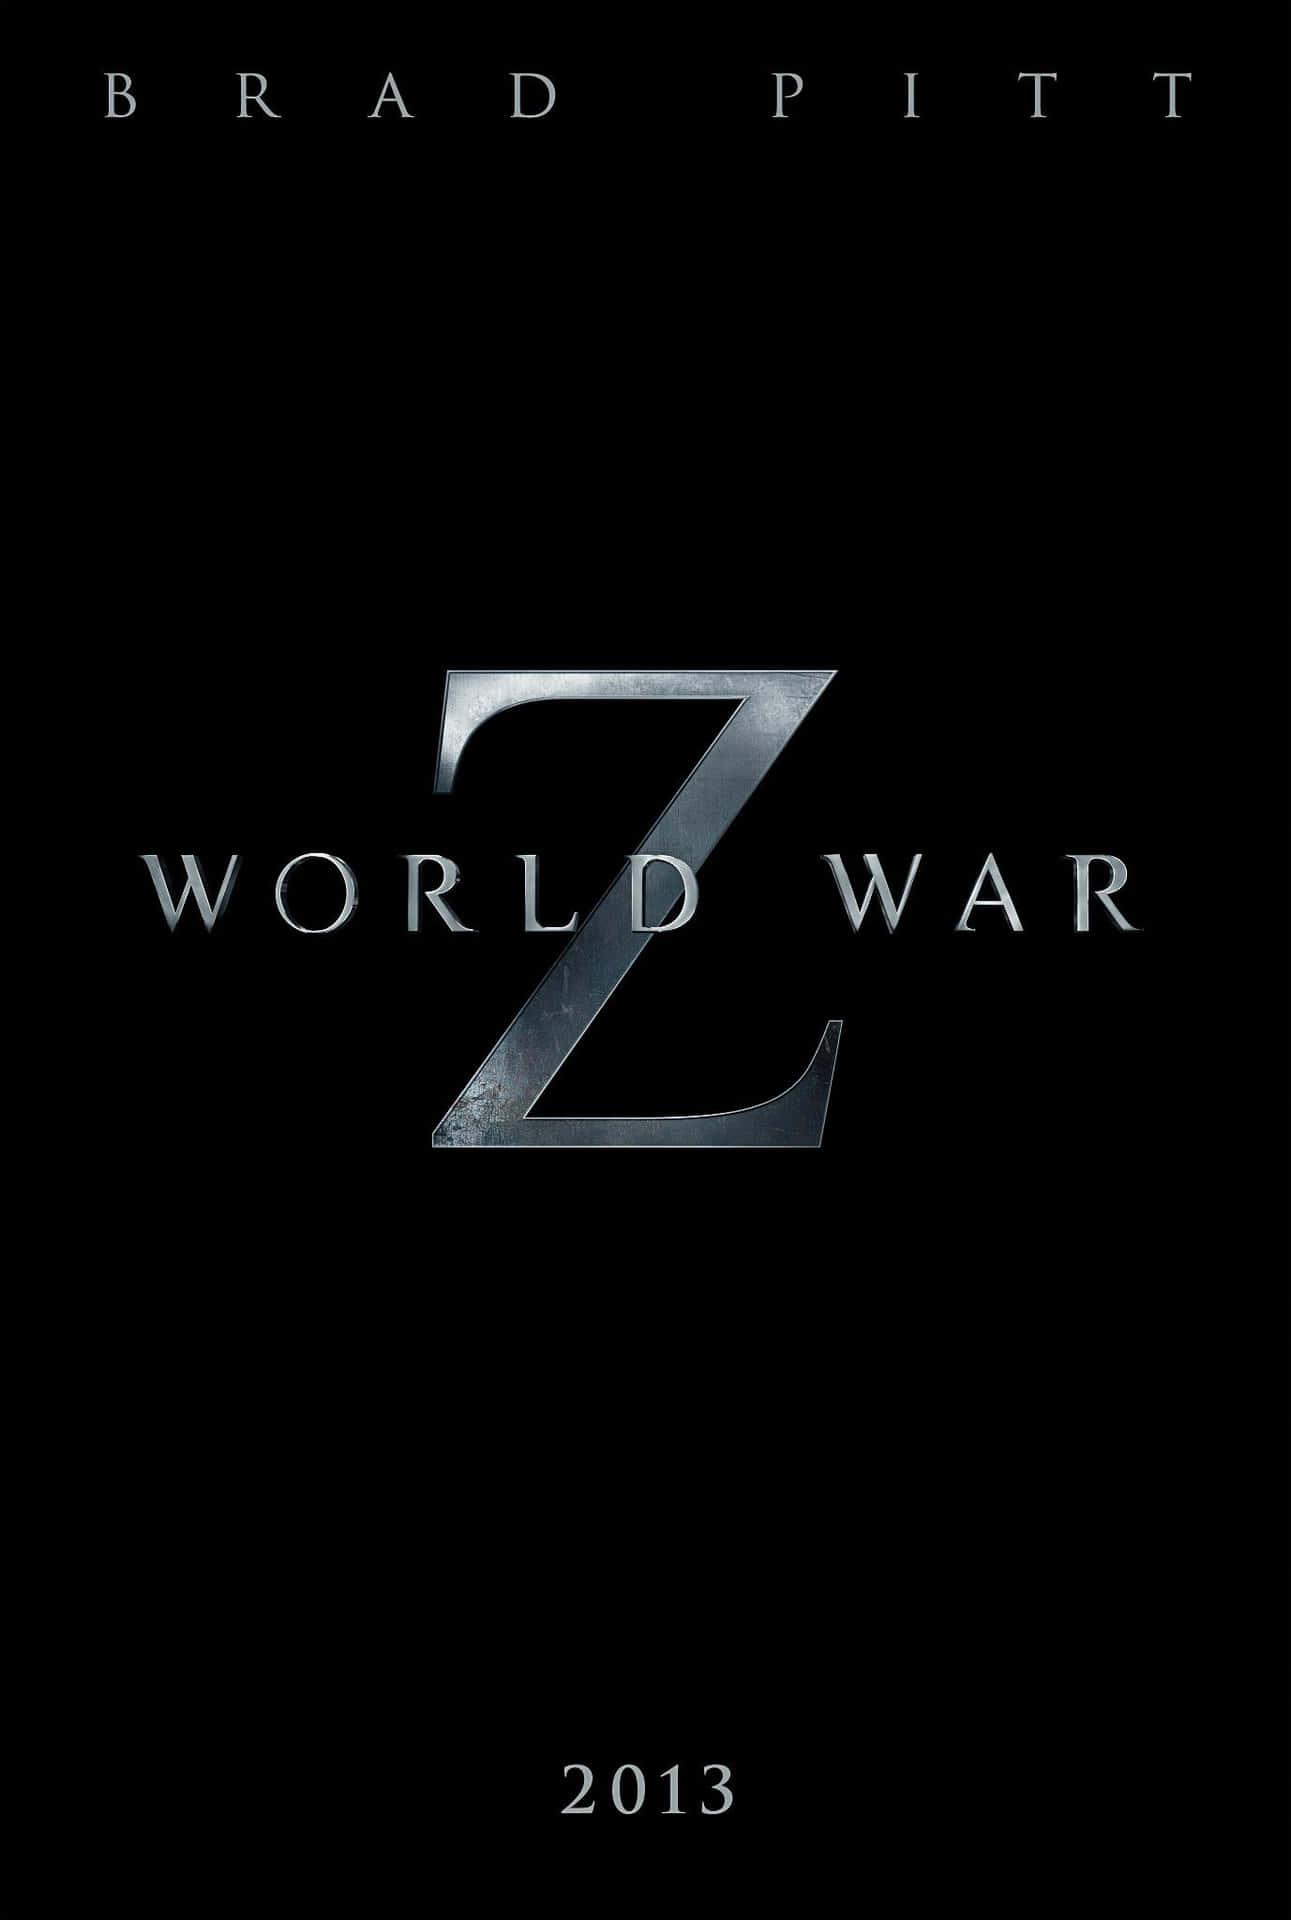 Bradpitt È Il Protagonista Del Thriller Adrenalinico Sui Zombie: World War Z